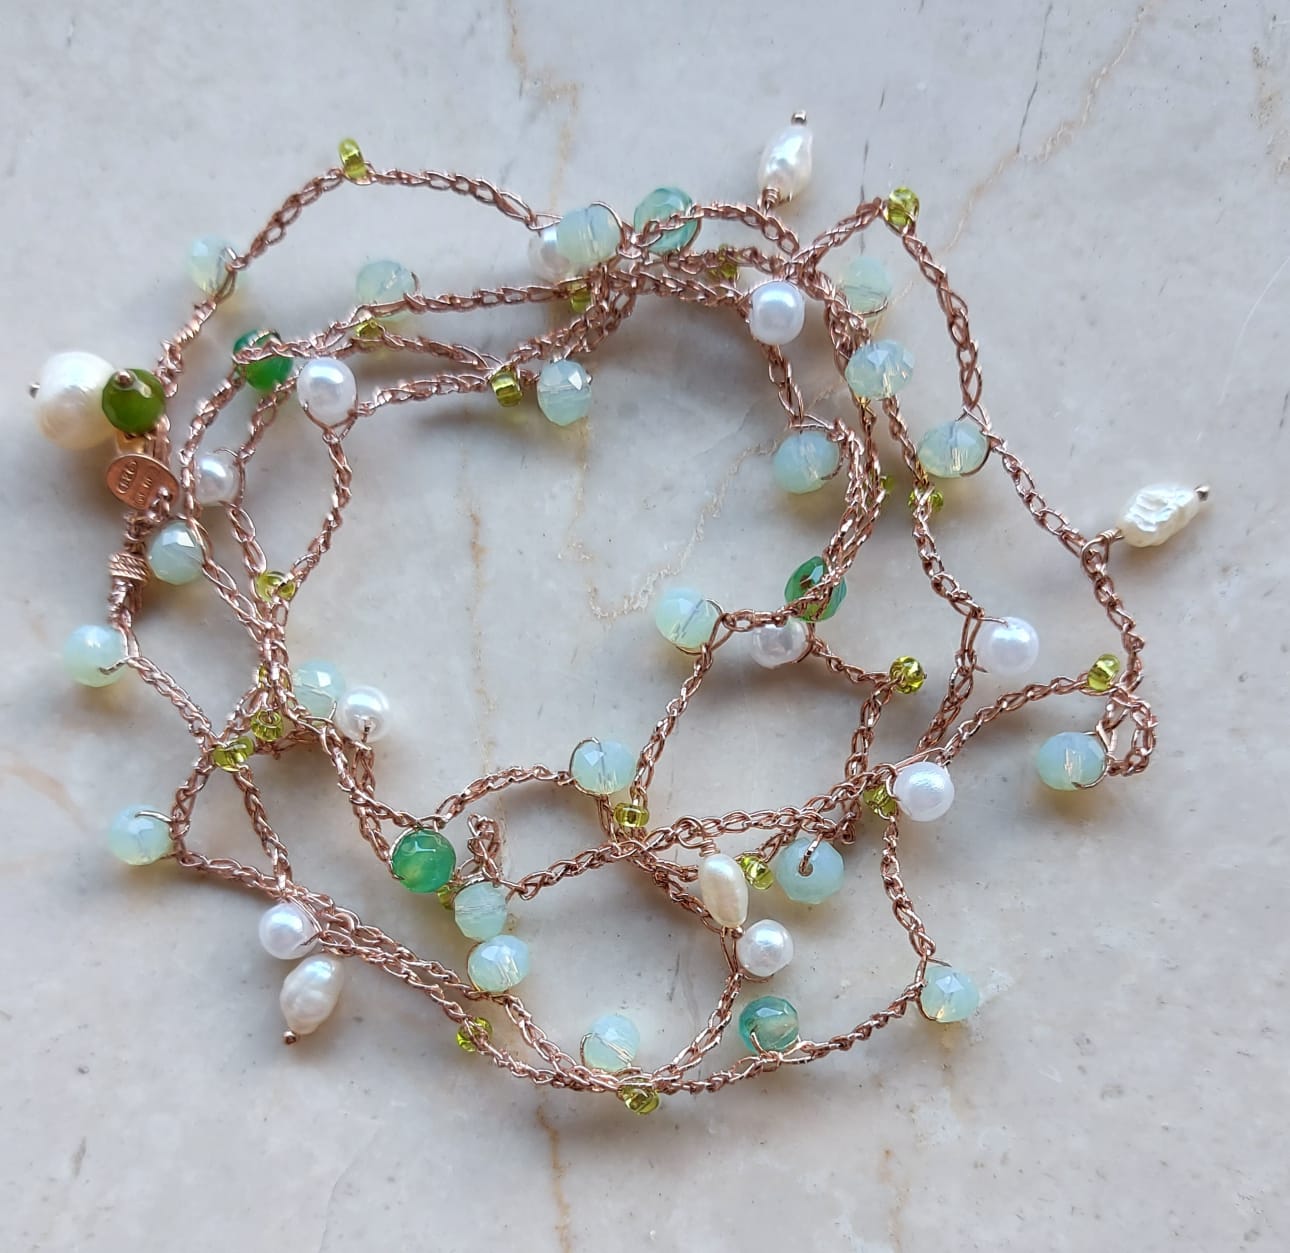 Cavigliera o collana o bracciale in macramè a tre fili con cristalli tonalità sul verde e perle